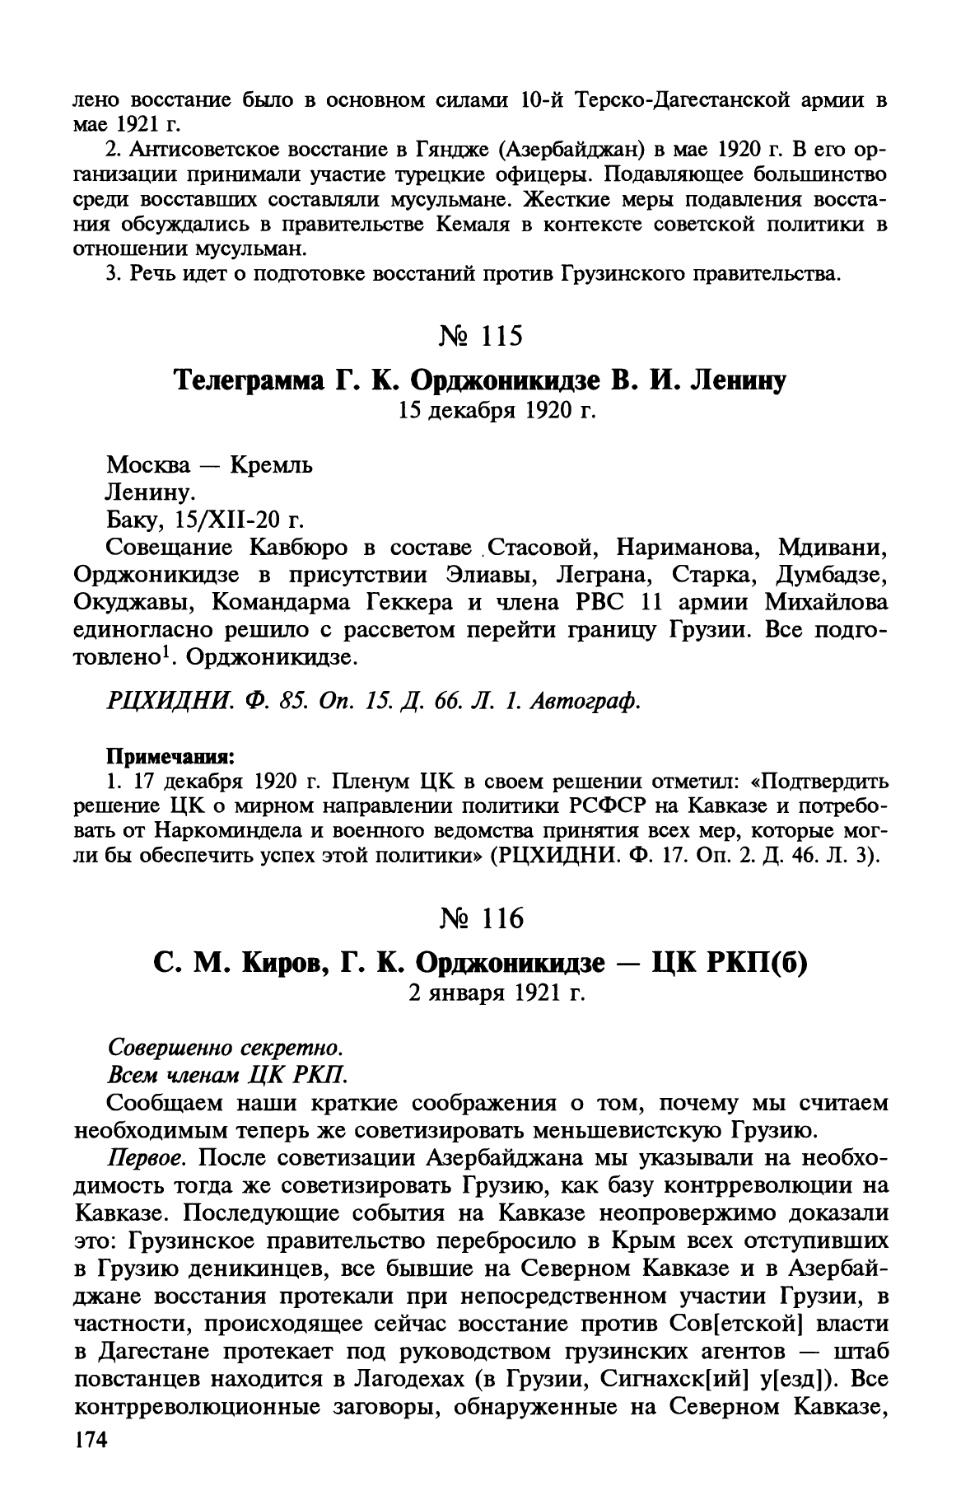 115. Телеграмма Г. К. Орджоникидзе В. И. Ленину. 15 декабря 1920 г.